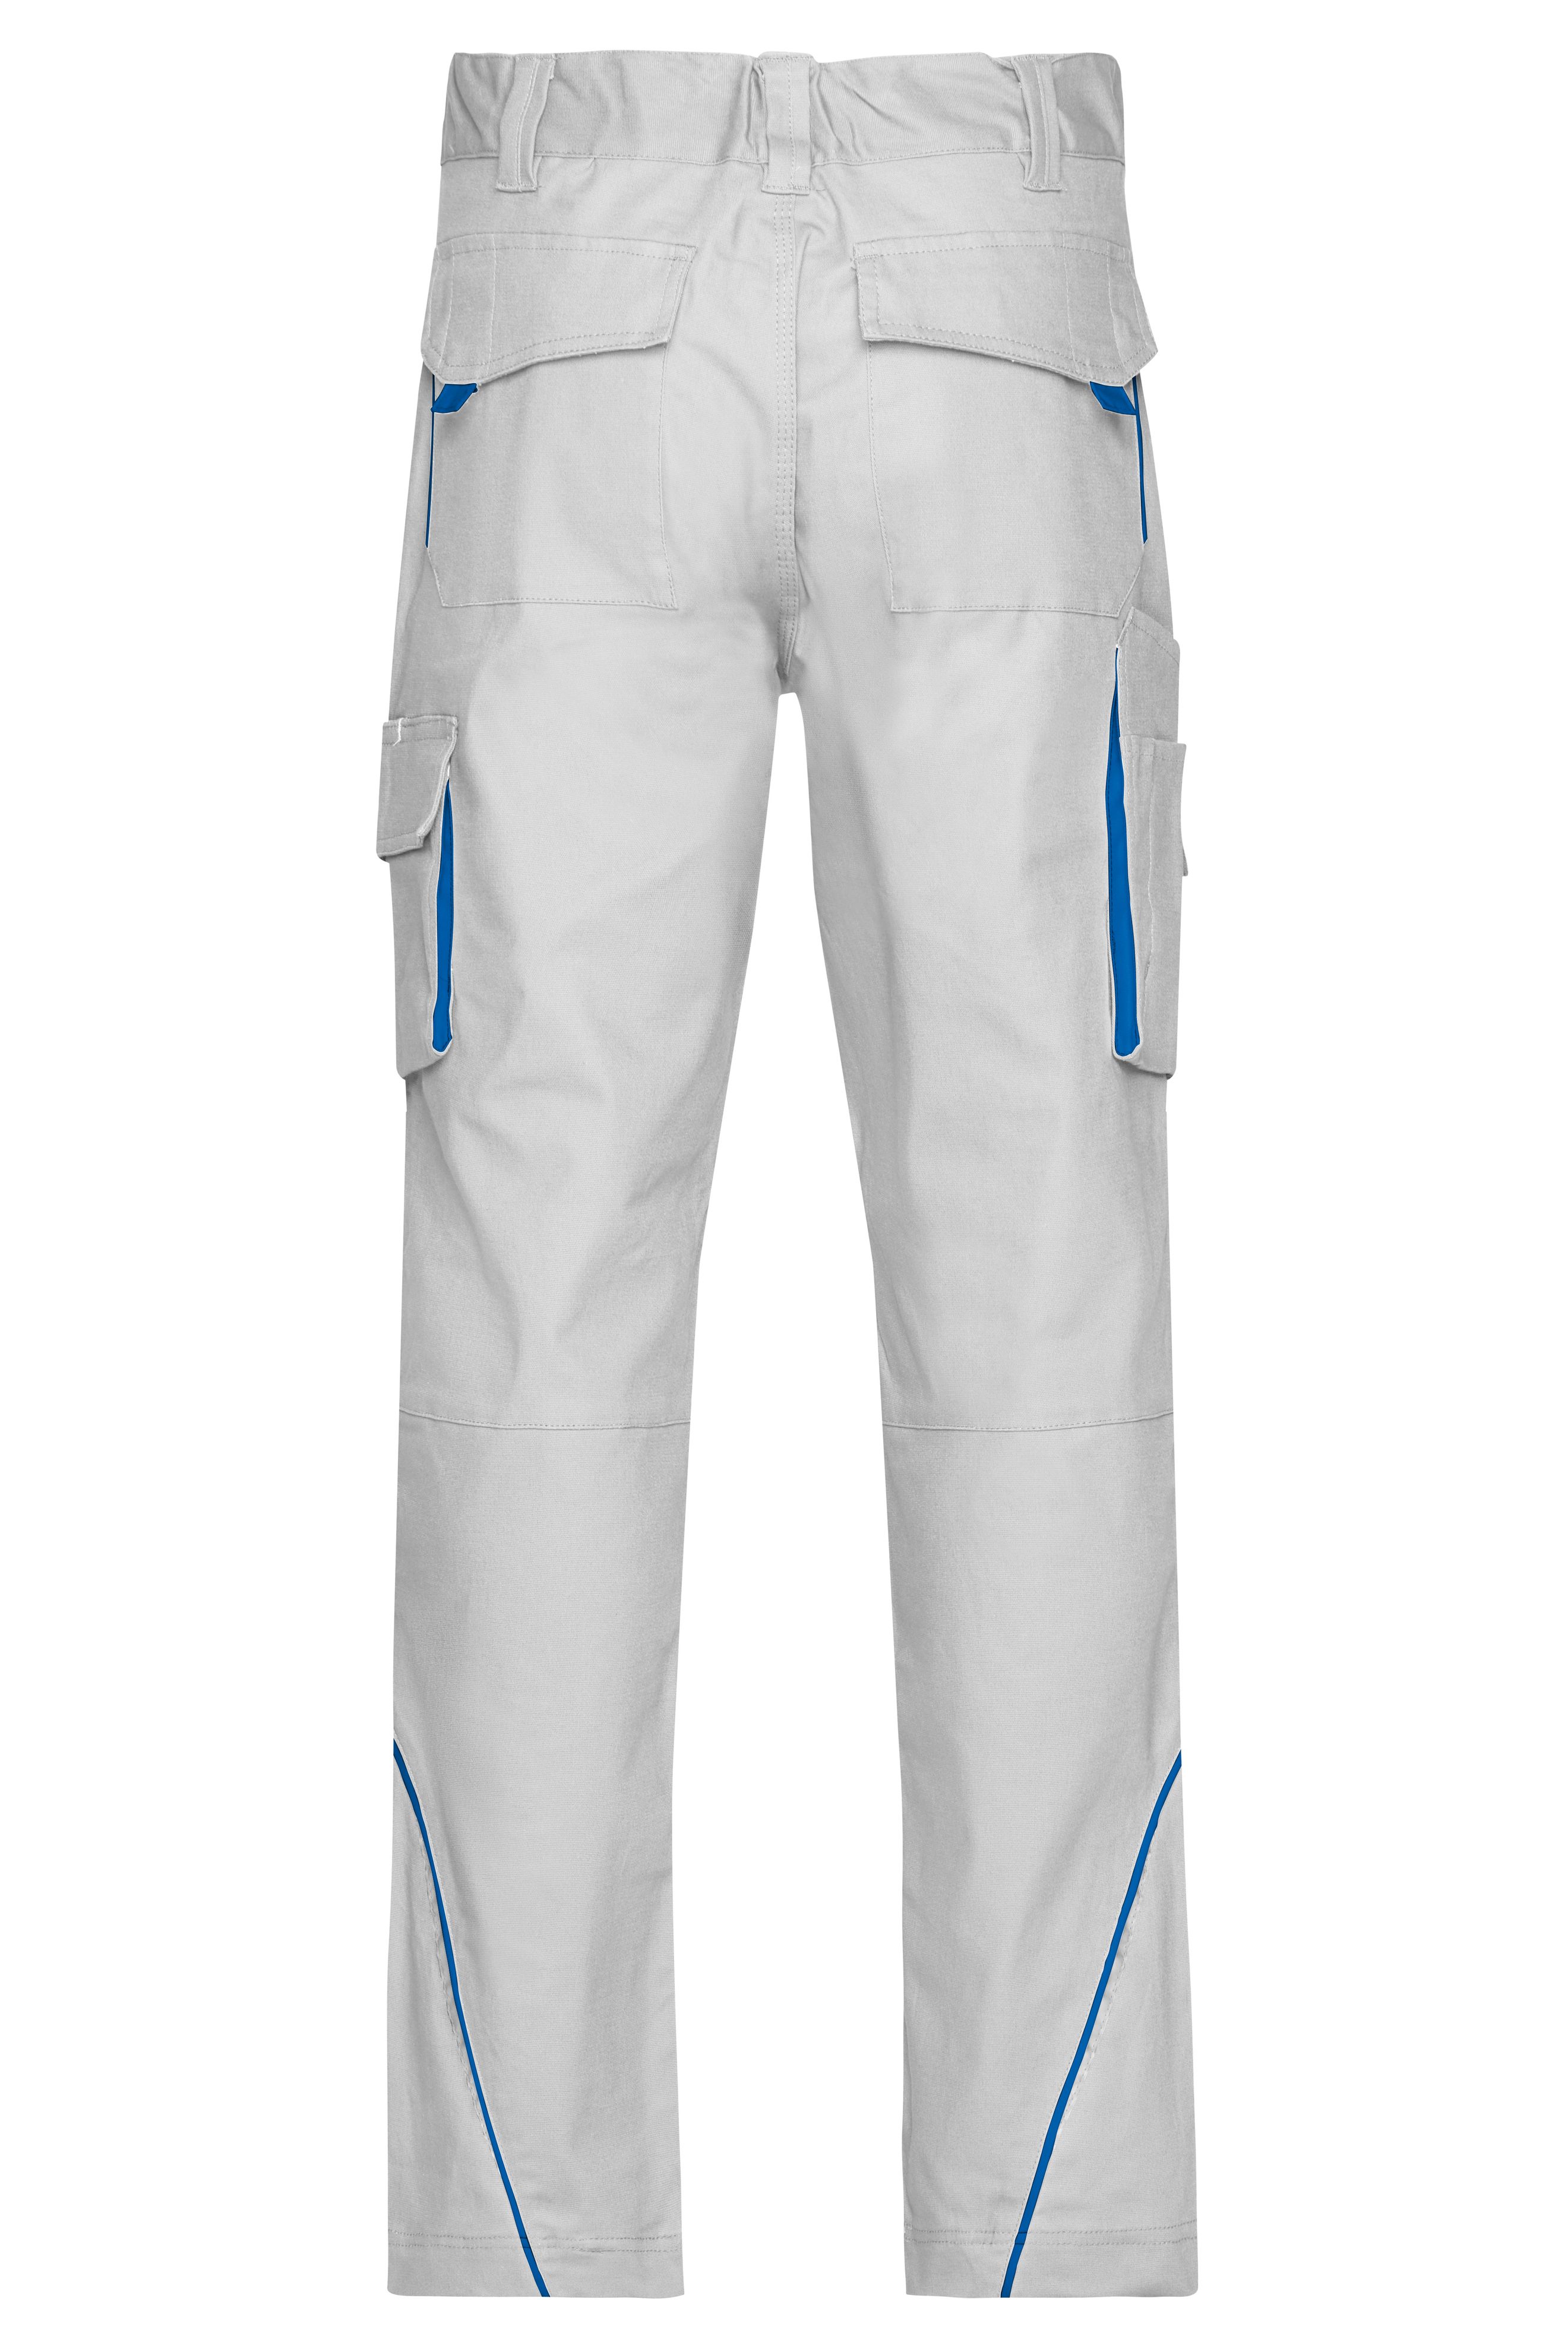 Workwear Pants - COLOR - JN847 Funktionelle Hose im sportlichen Look mit hochwertigen Details